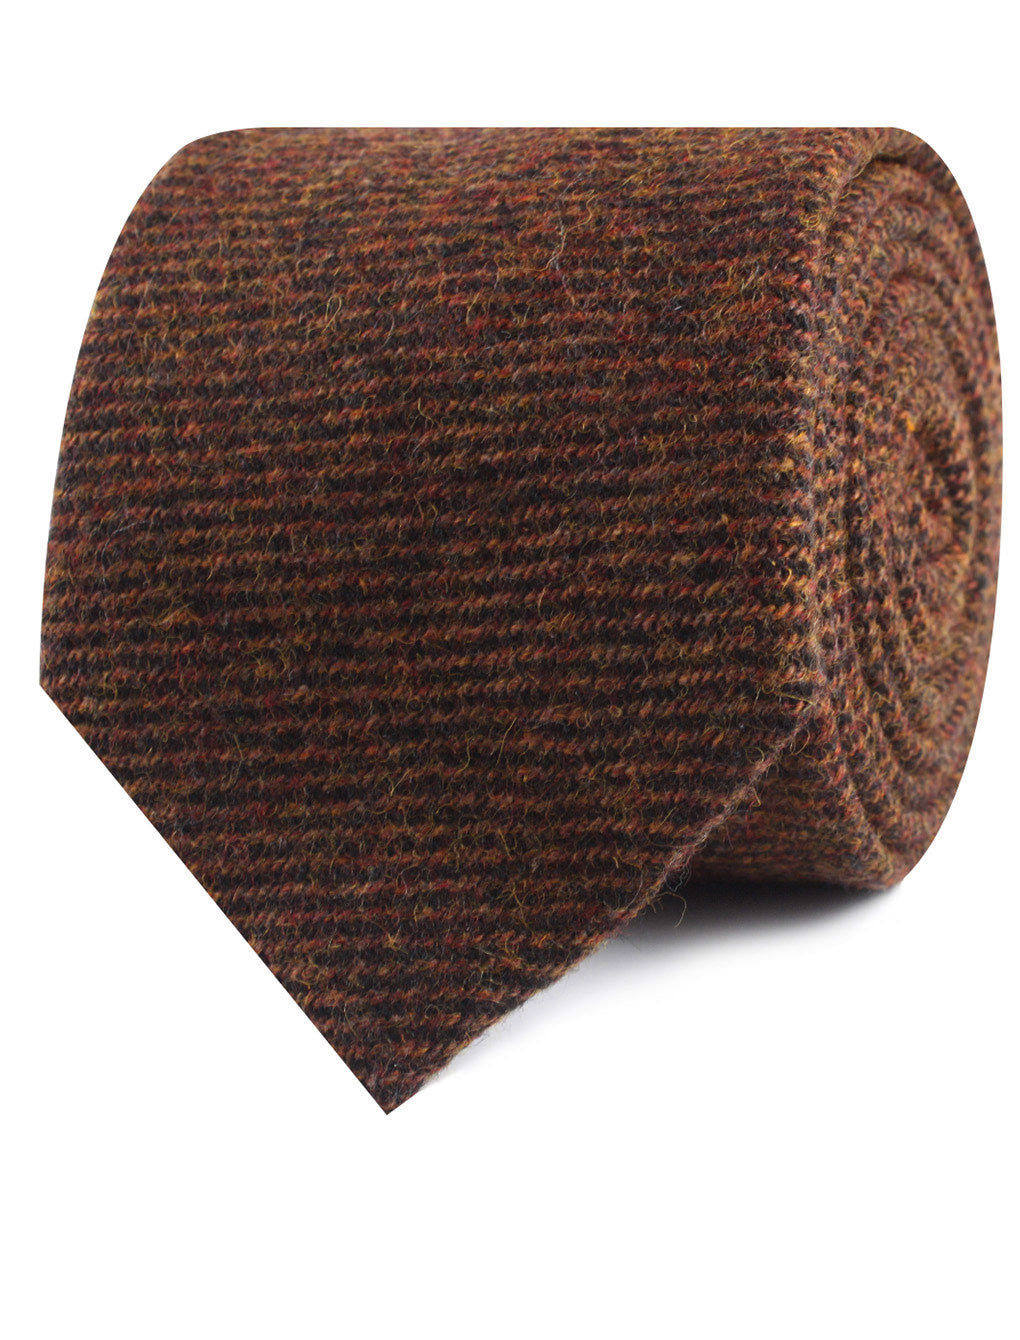 Chocolate Brown Striped Wool Necktie